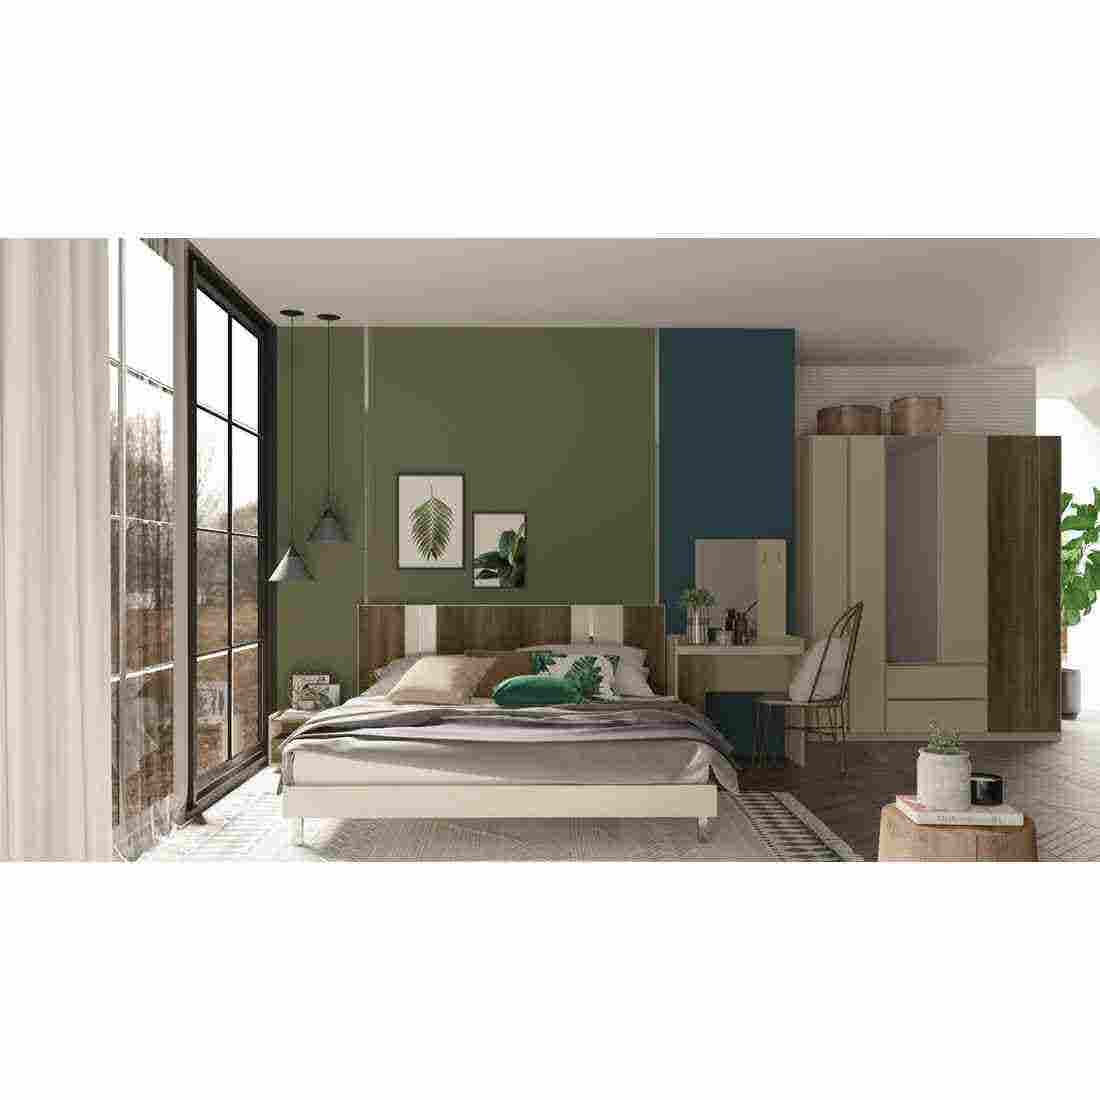 ชุดห้องนอน ชุดห้องนอนขนาด 5 ฟุต รุ่น Estano สีสีเข้มลายไม้ธรรมชาติ-SB Design Square